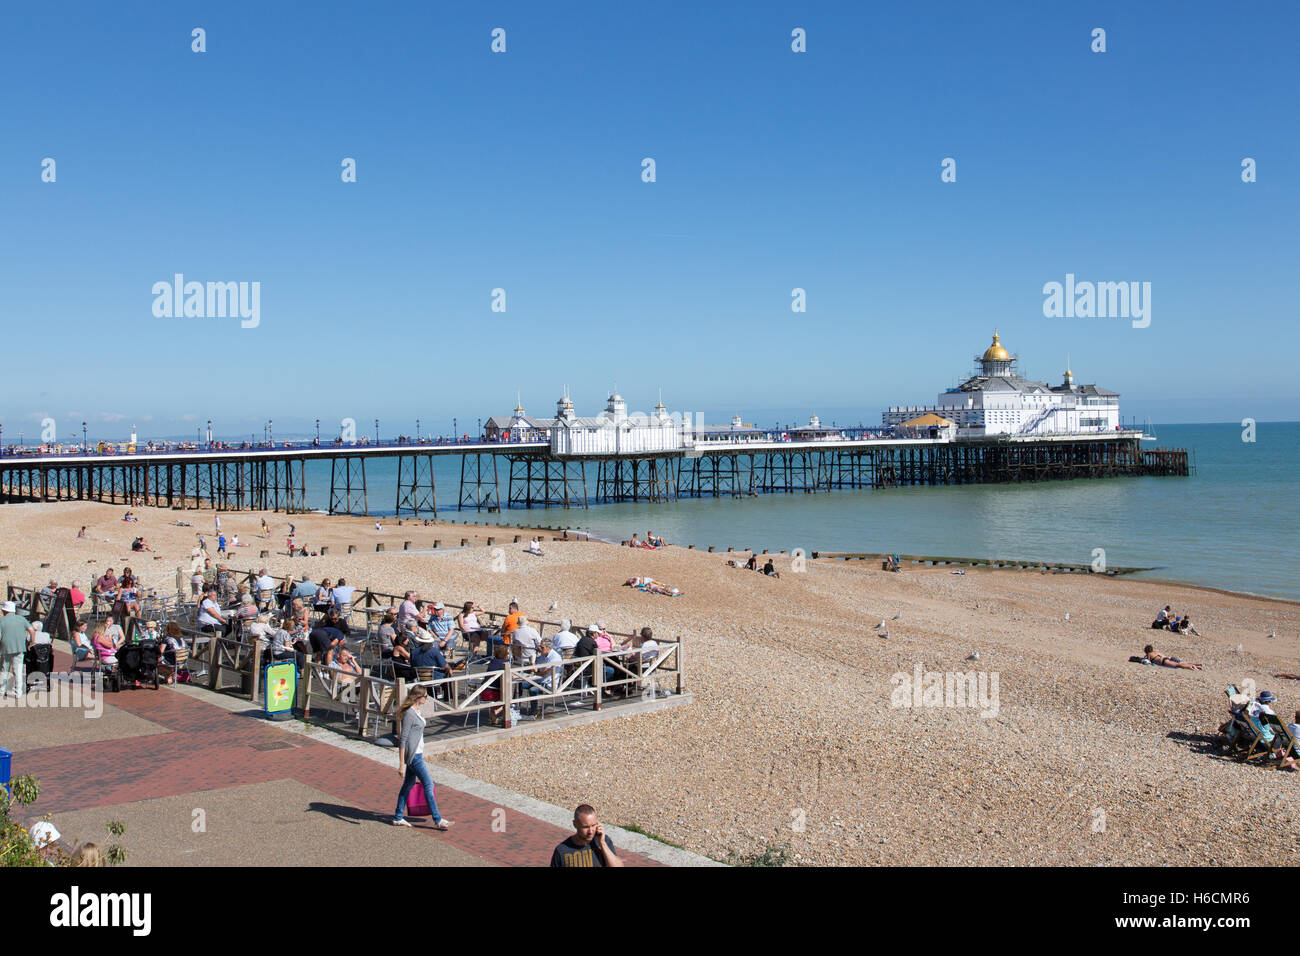 The Pier, Grand Parade, Eastbourne Stock Photo